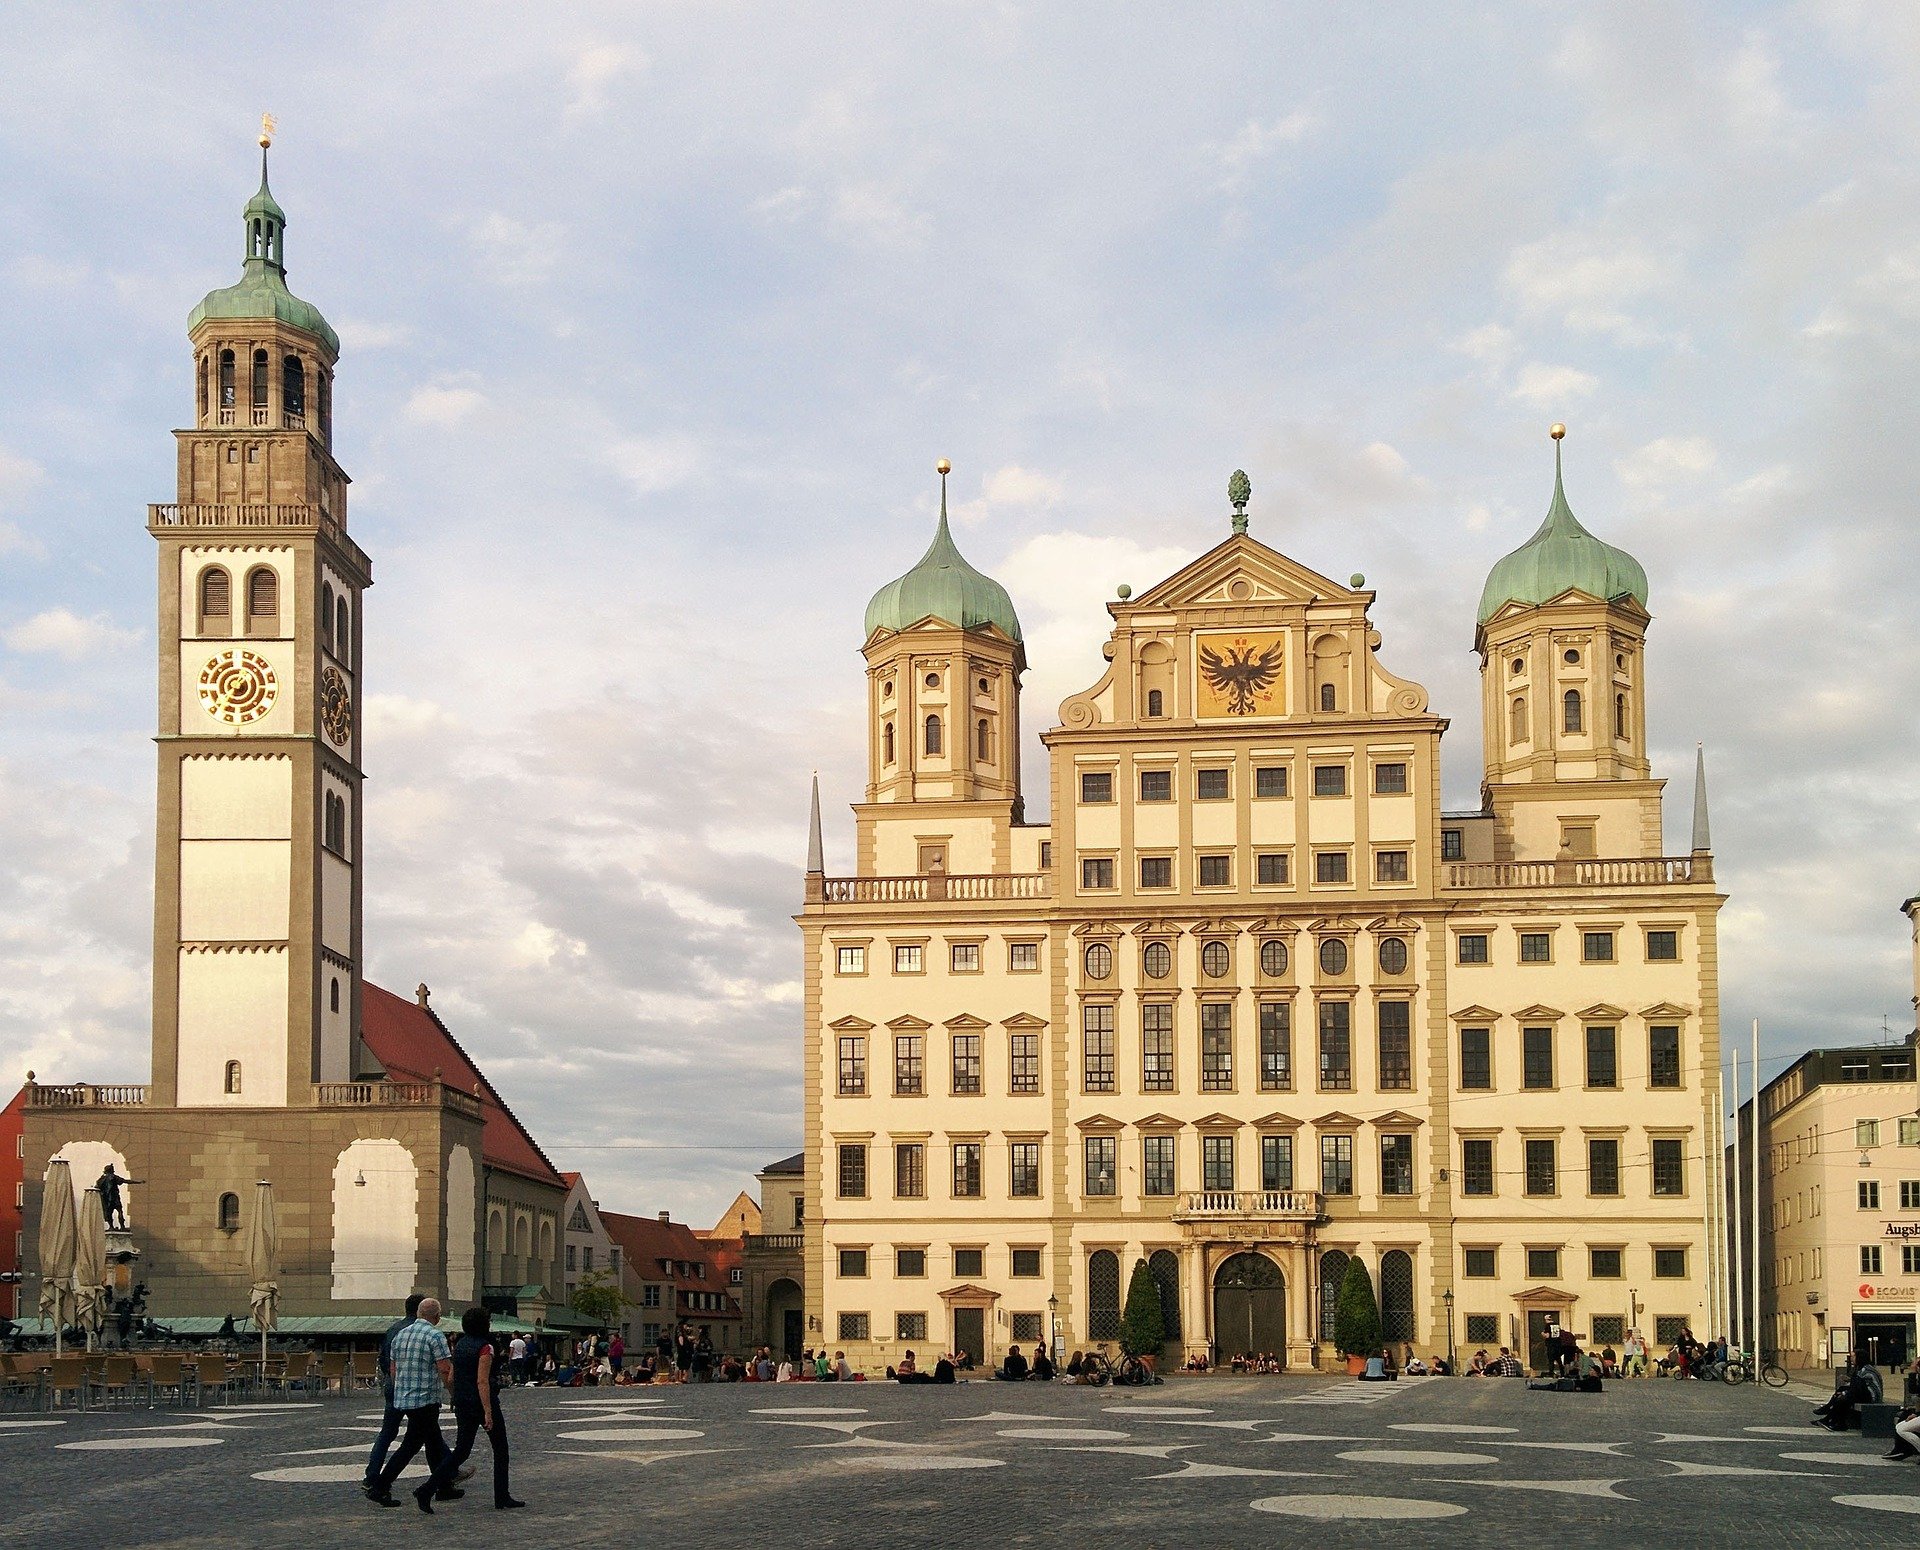 Augsburg-Perlachturm-Rathaus